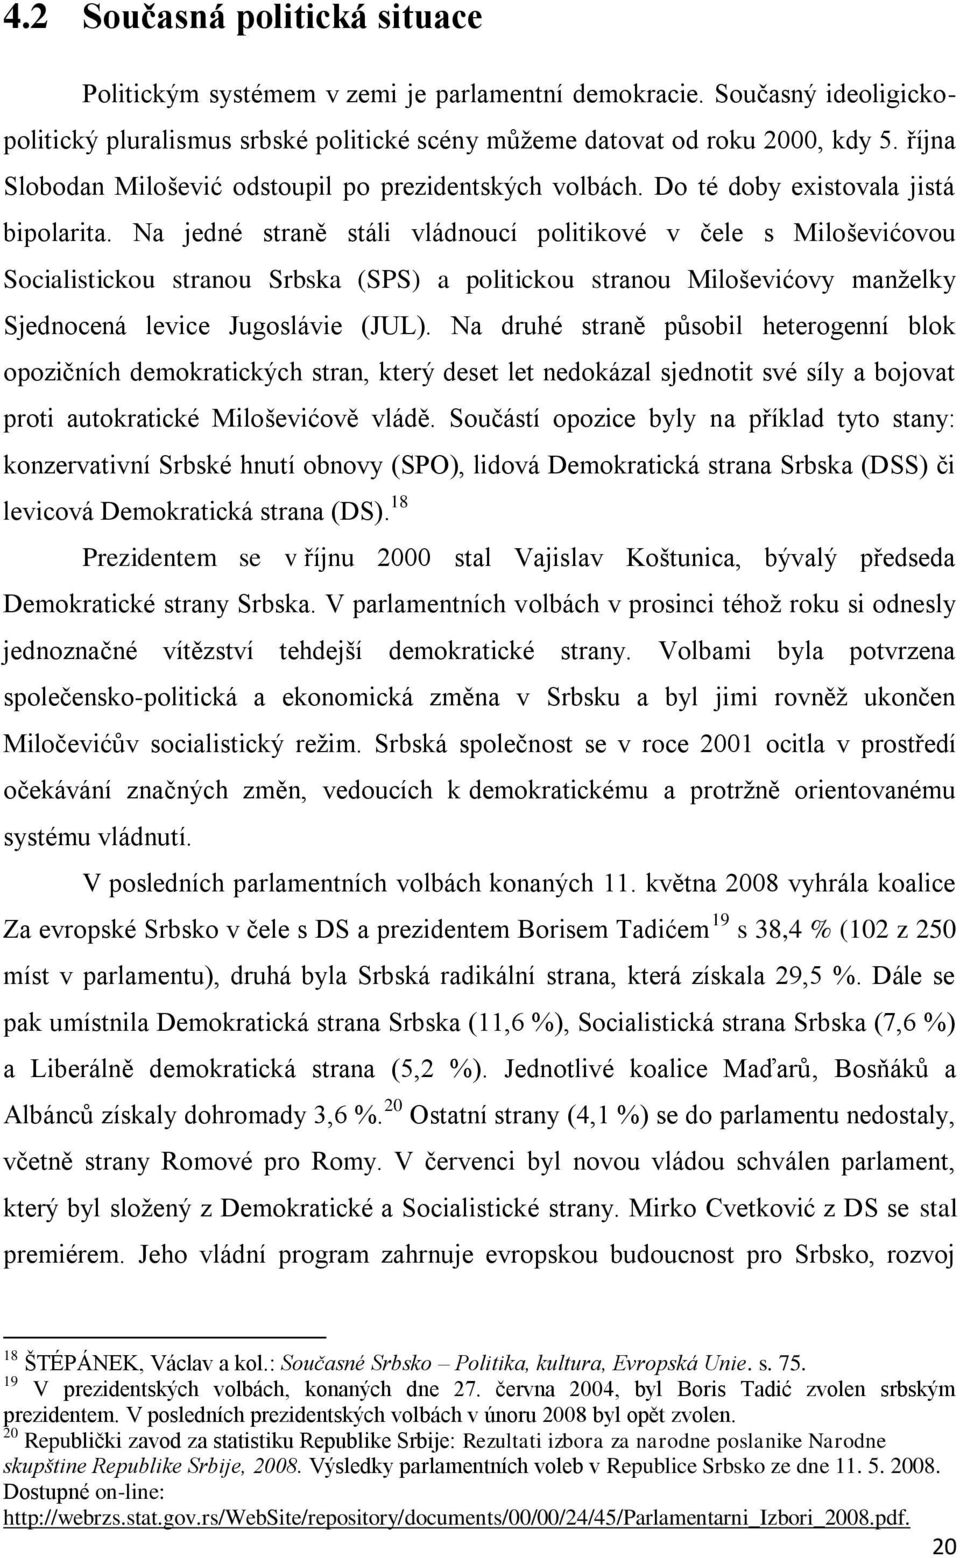 Na jedné straně stáli vládnoucí politikové v ĉele s Miloševićovou Socialistickou stranou Srbska (SPS) a politickou stranou Miloševićovy manţelky Sjednocená levice Jugoslávie (JUL).